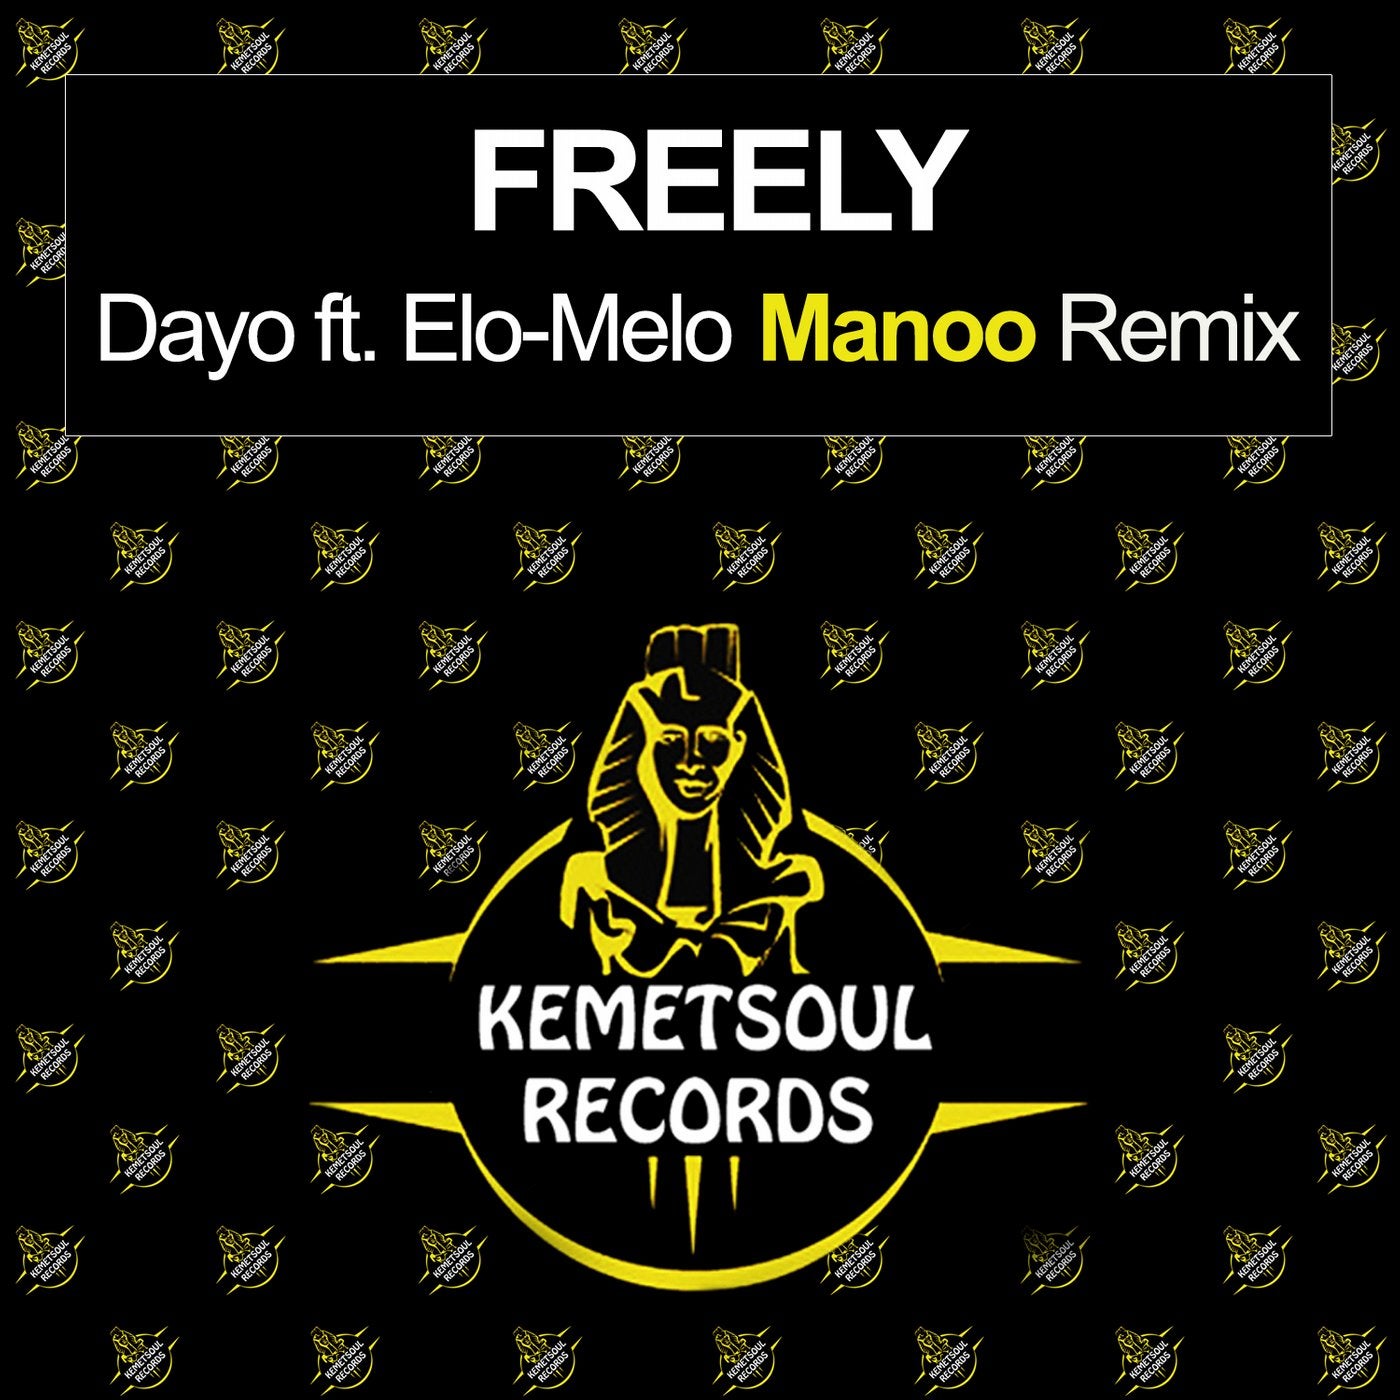 Freely (Manoo Remix)